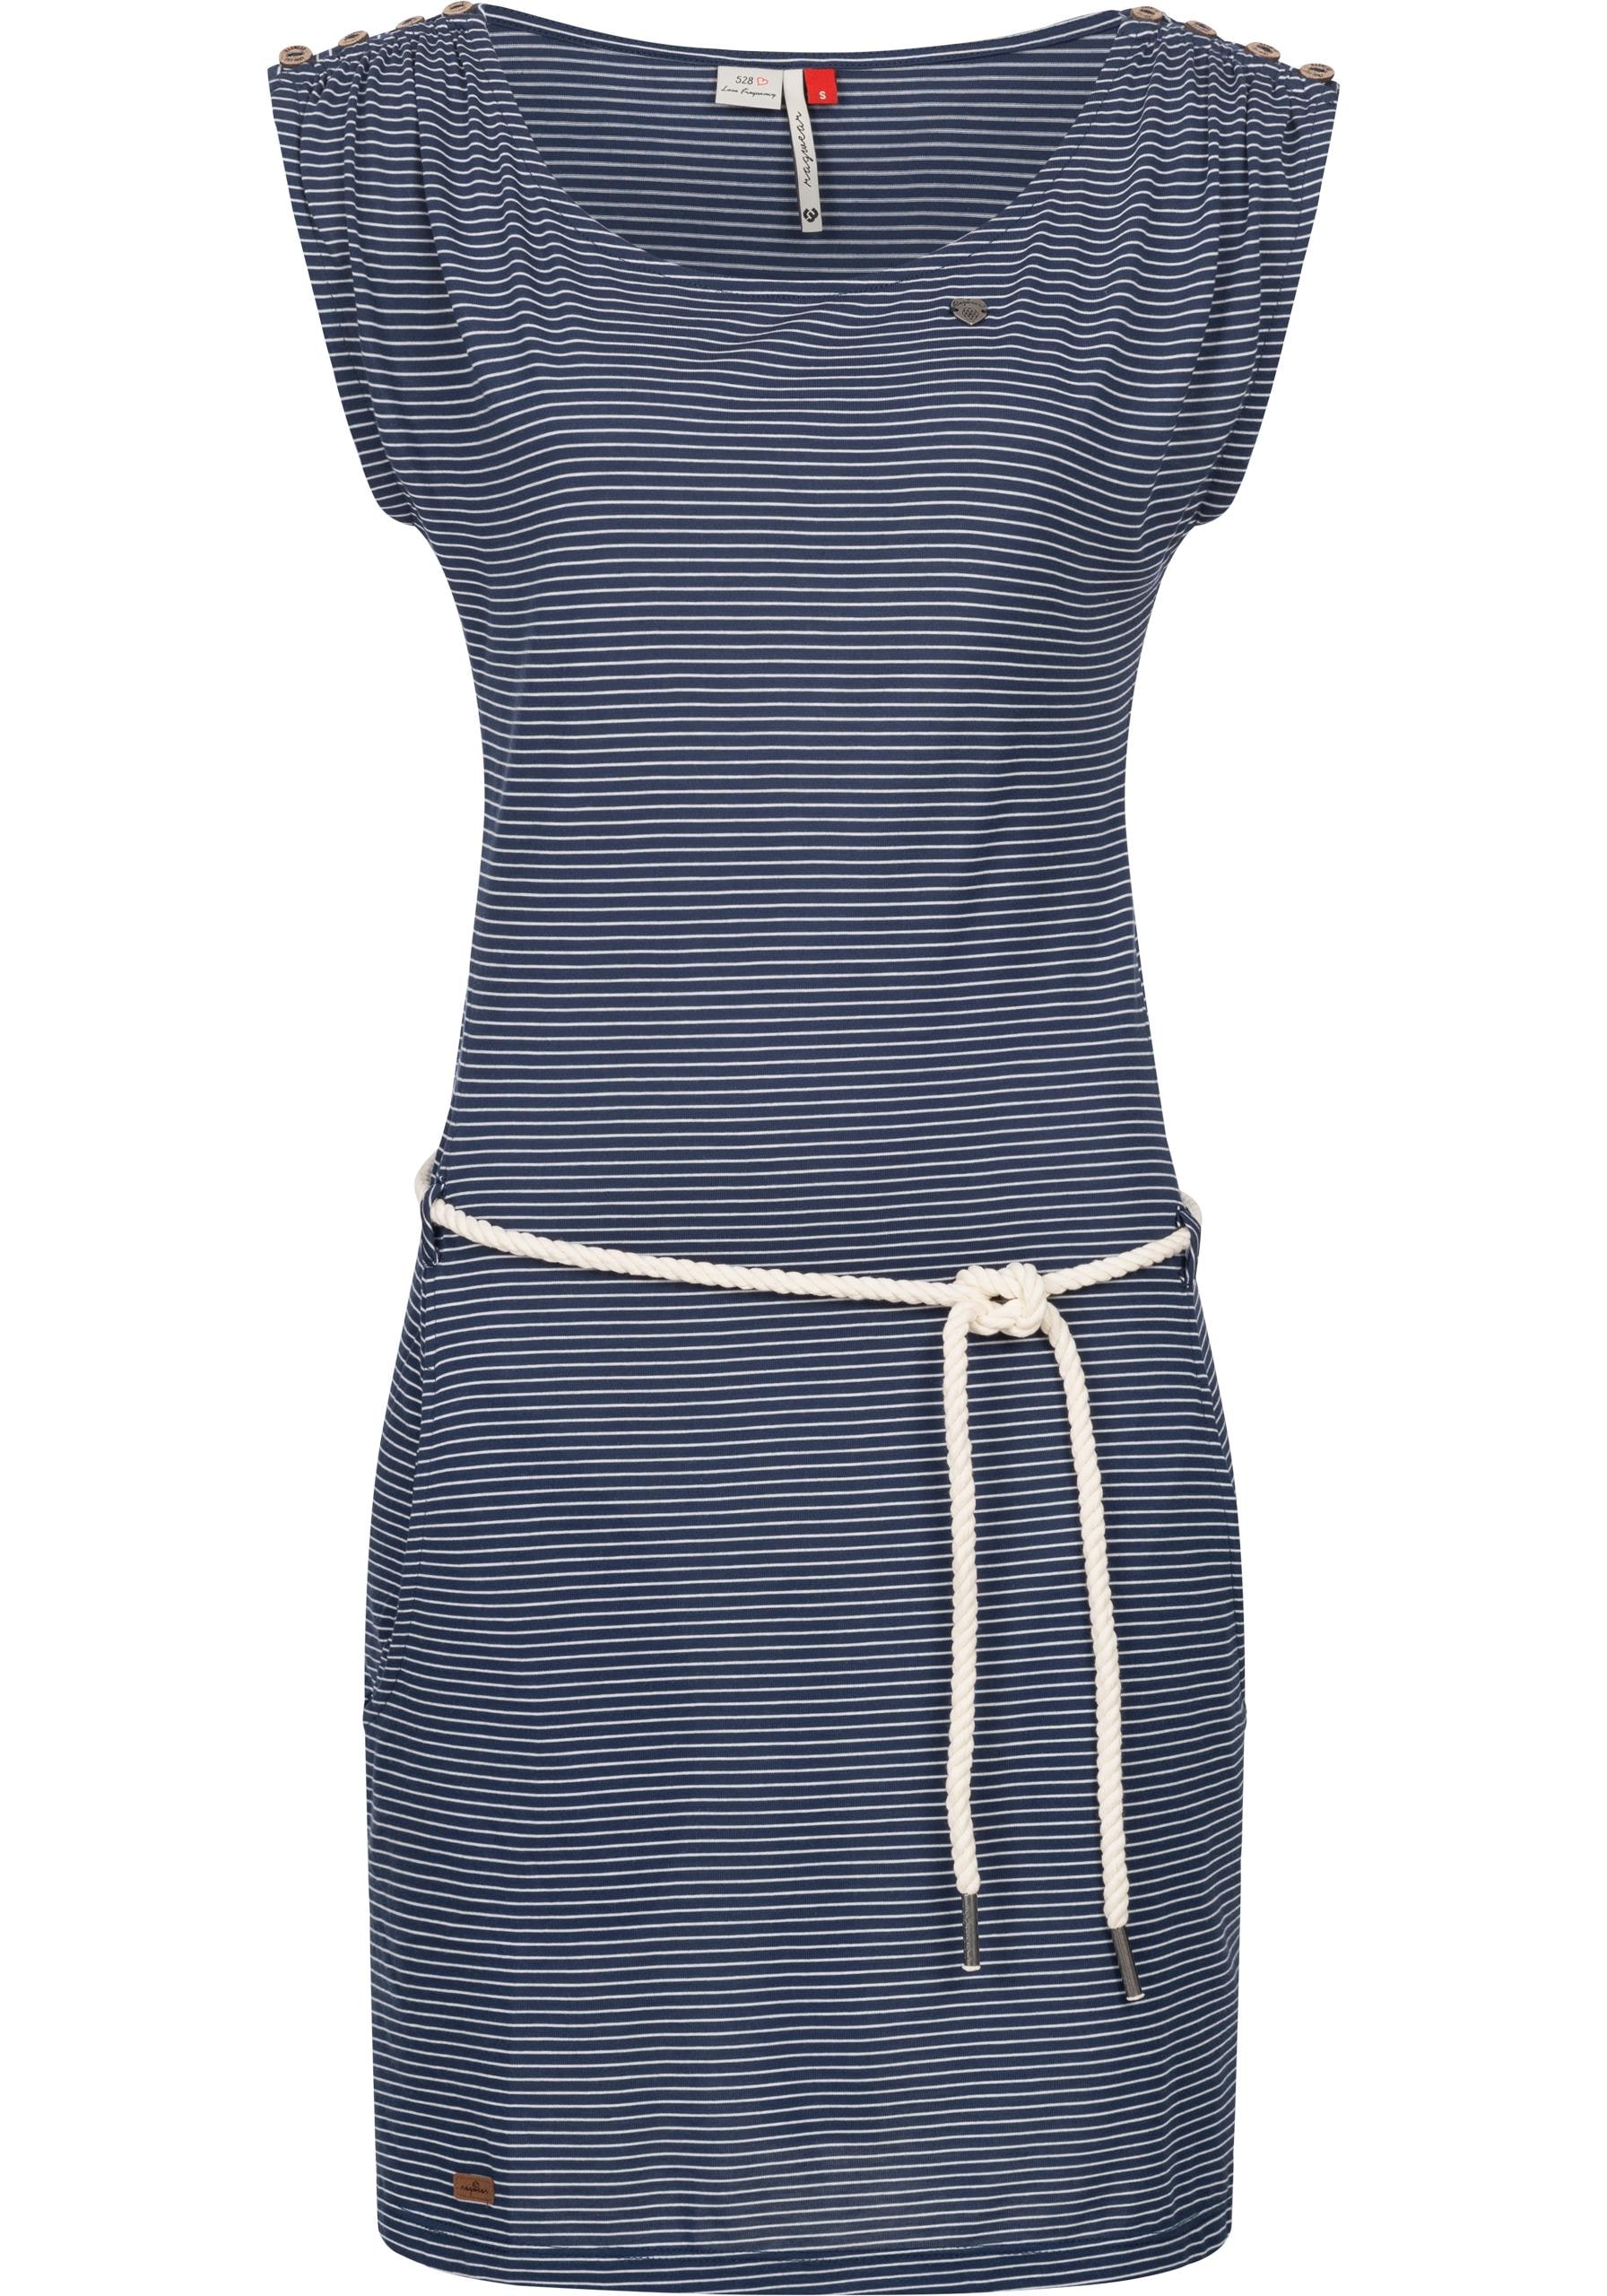 Ragwear Shirtkleid »Chego Stripes Intl.«, stylisches Sommerkleid mit  Streifen-Muster shoppen | I'm walking